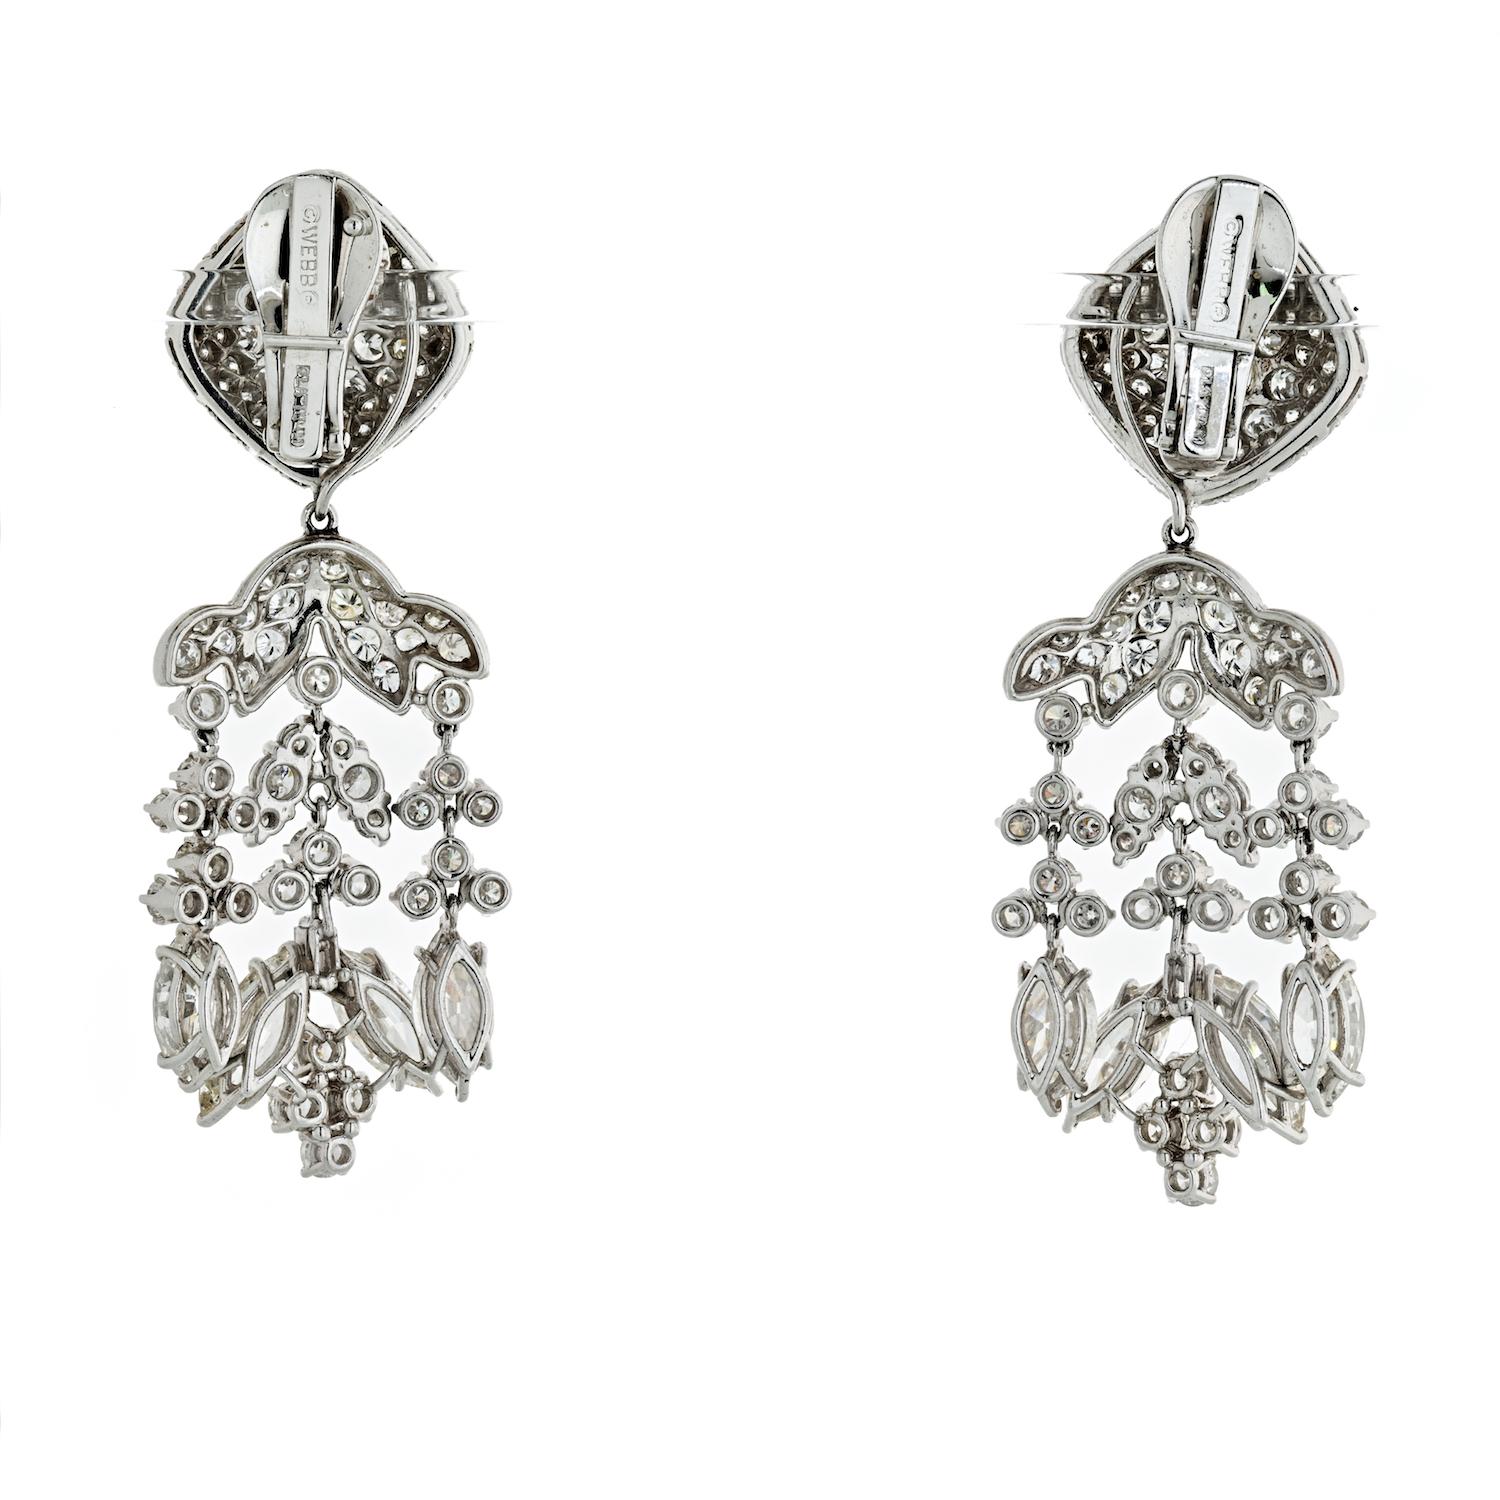 Paire de boucles d'oreilles chandelier américaines en platine du 20e siècle avec plus de 20 carats de diamants par David Webb. Les boucles d'oreilles articulées comportent des diamants de taille marquise, ronde et un soupçon de baguette pour un